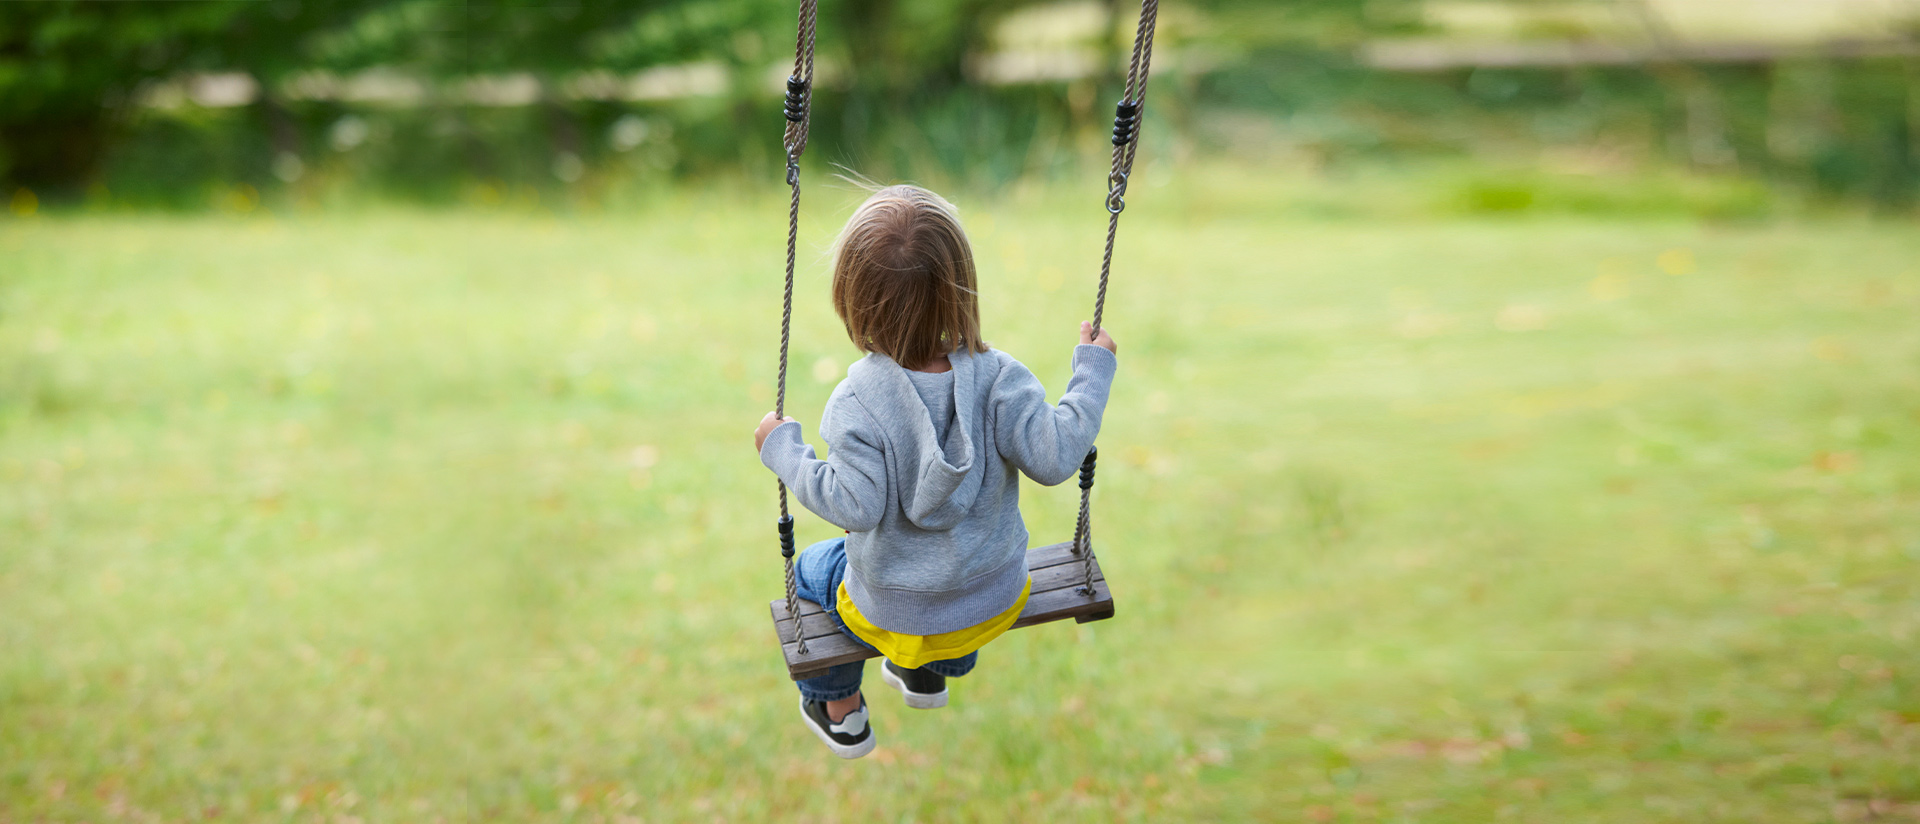 little kid on swing